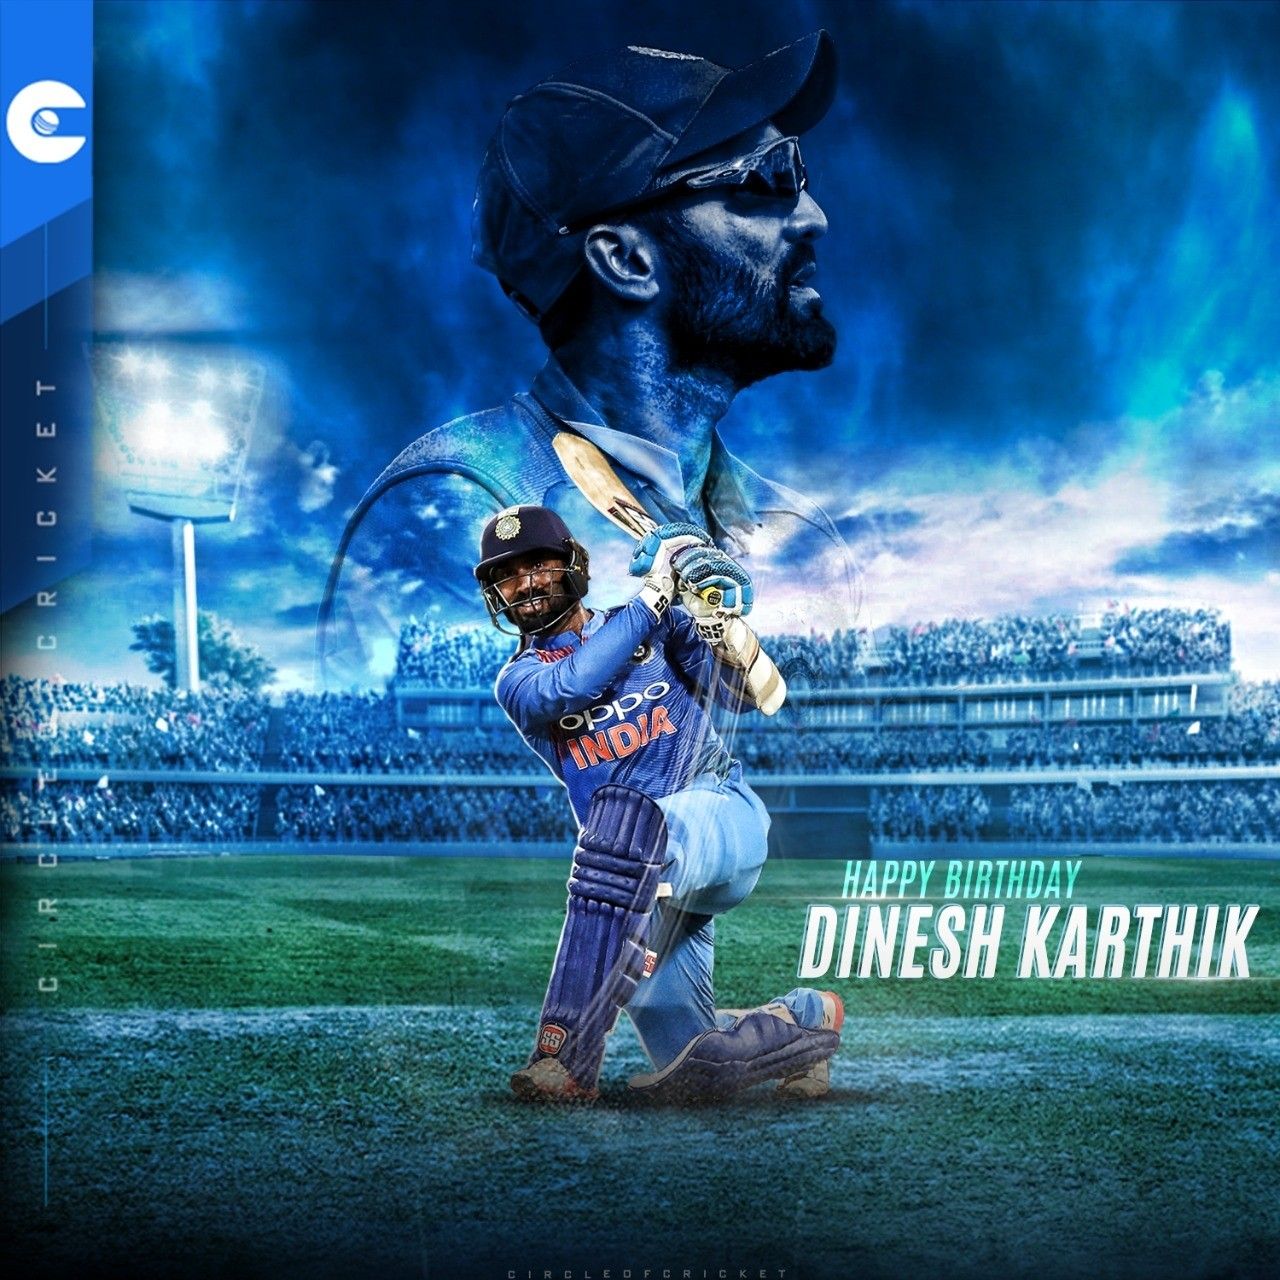 Full Cricket &, dinesh karthik HD wallpaper | Pxfuel